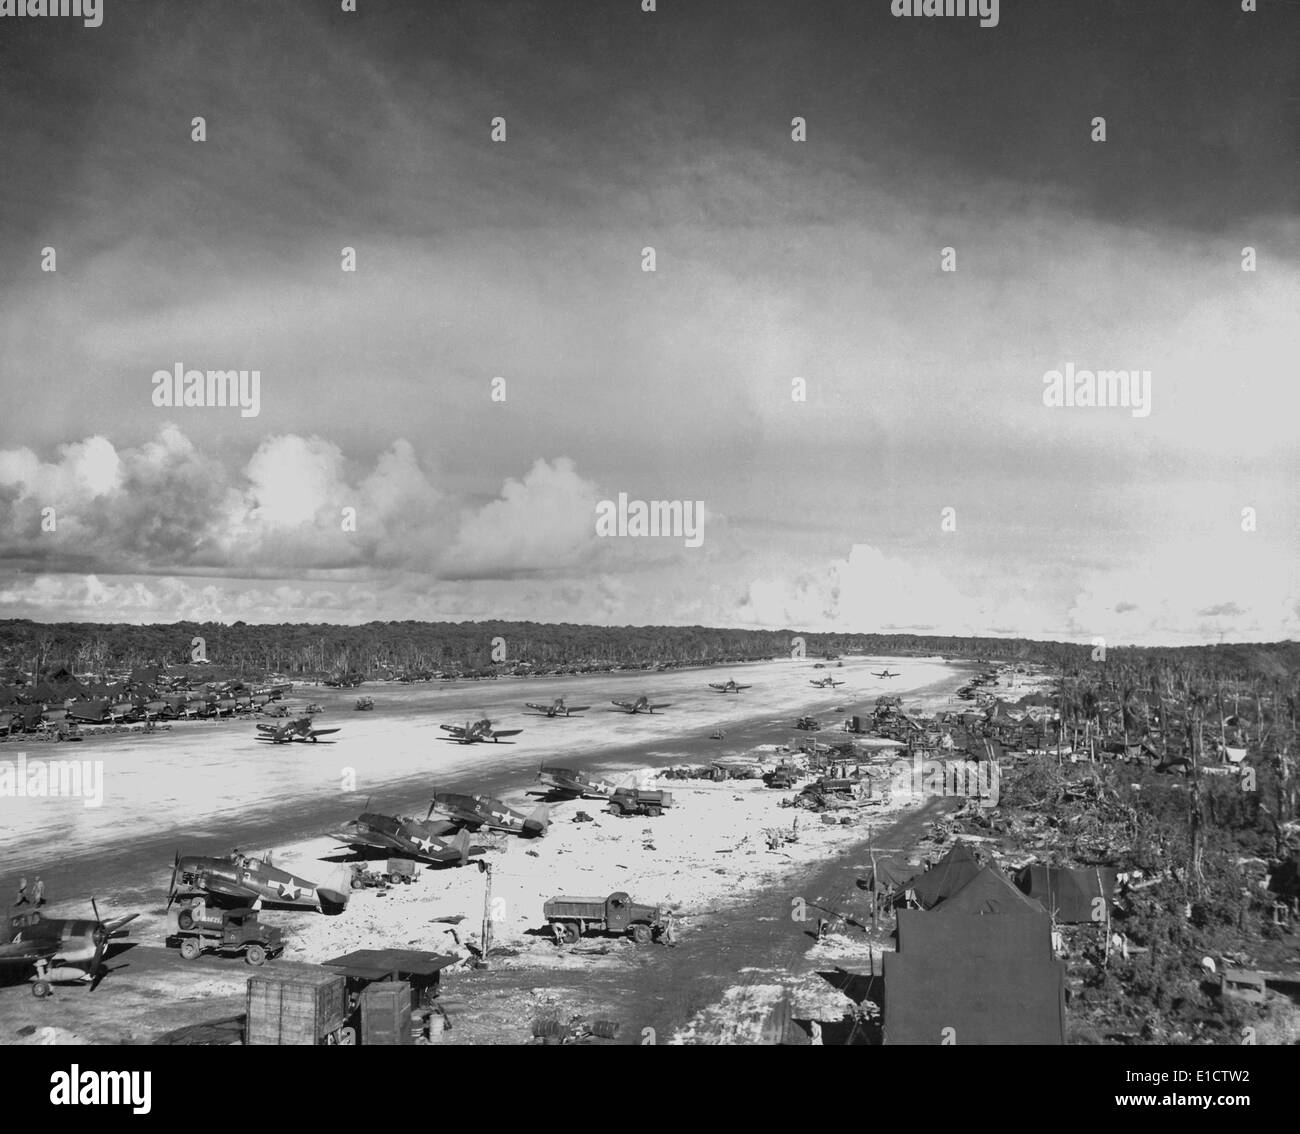 Landebahn auf Orote Halbinsel von US-Marines in die Schlacht von Guam, Juli-Aug. 1944 gefangen genommen. Dem 2. Weltkrieg. (BSLOC 2013 14 45) Stockfoto